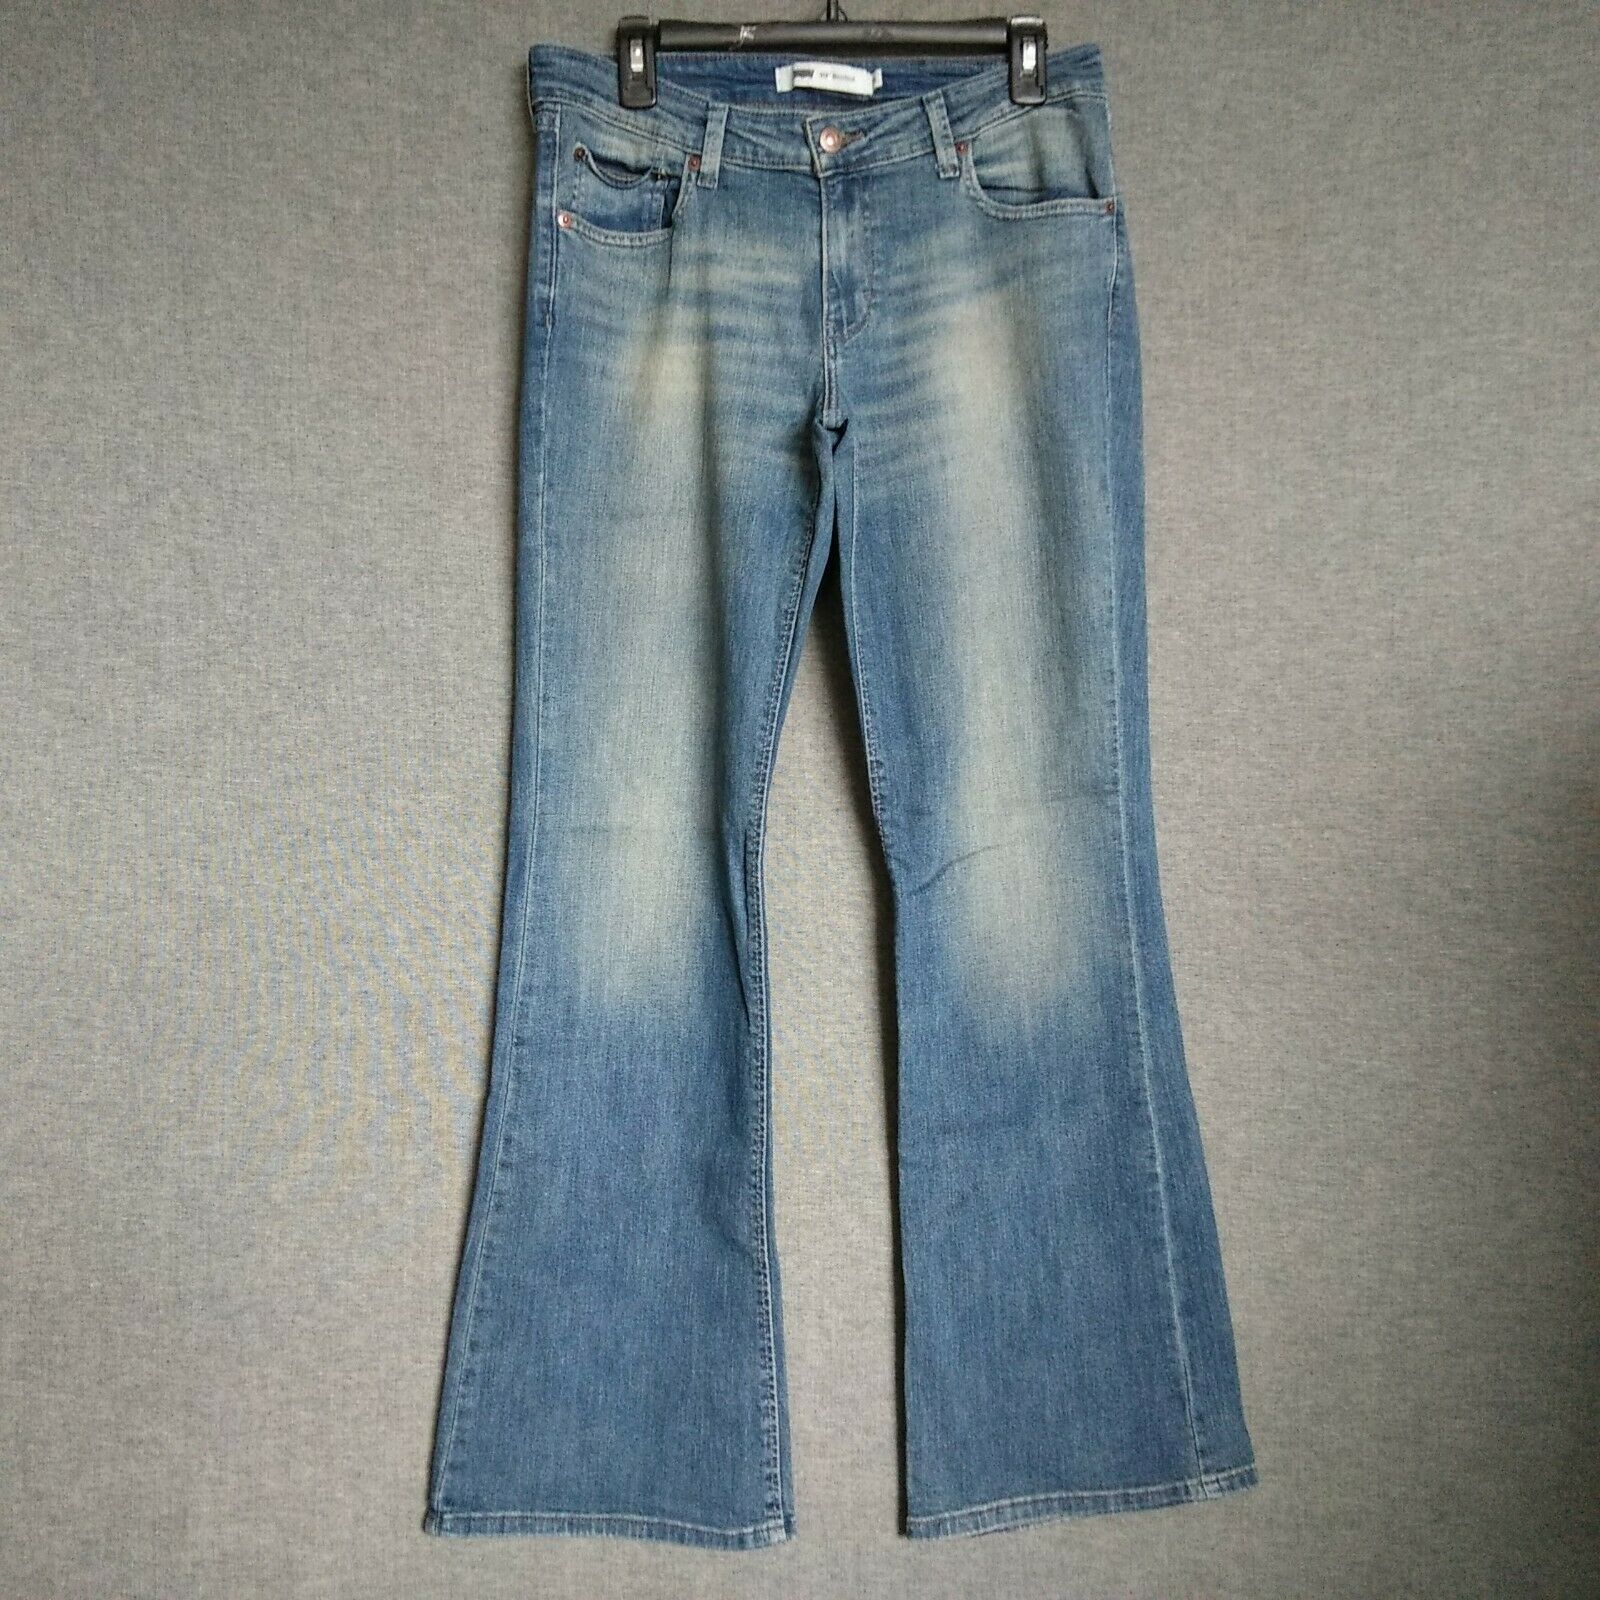 levis 518 bootcut jeans